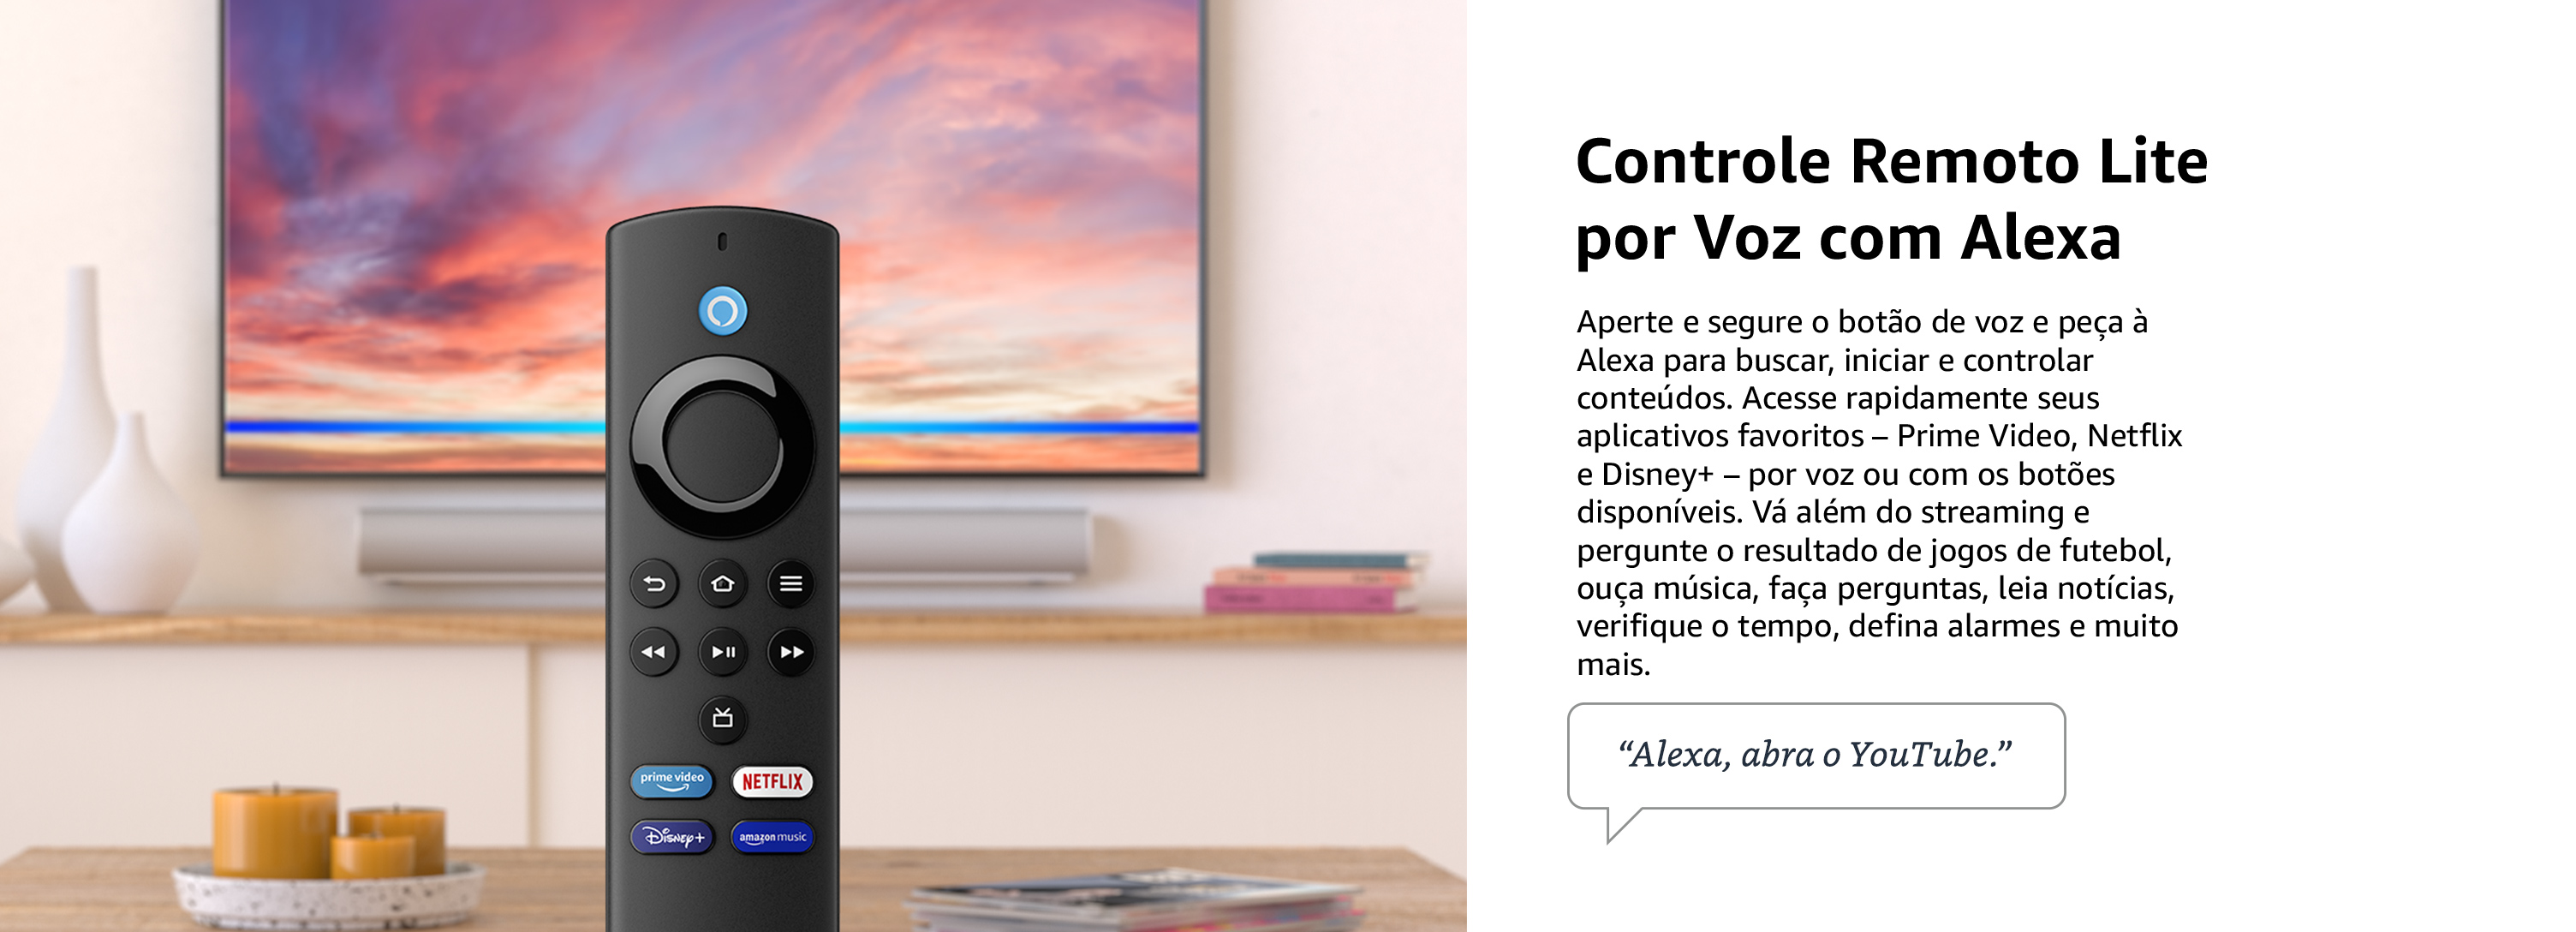 Fire TV Stick Lite Amazon (2ª Geração) Controle Remoto Lite por Voz com Alexa